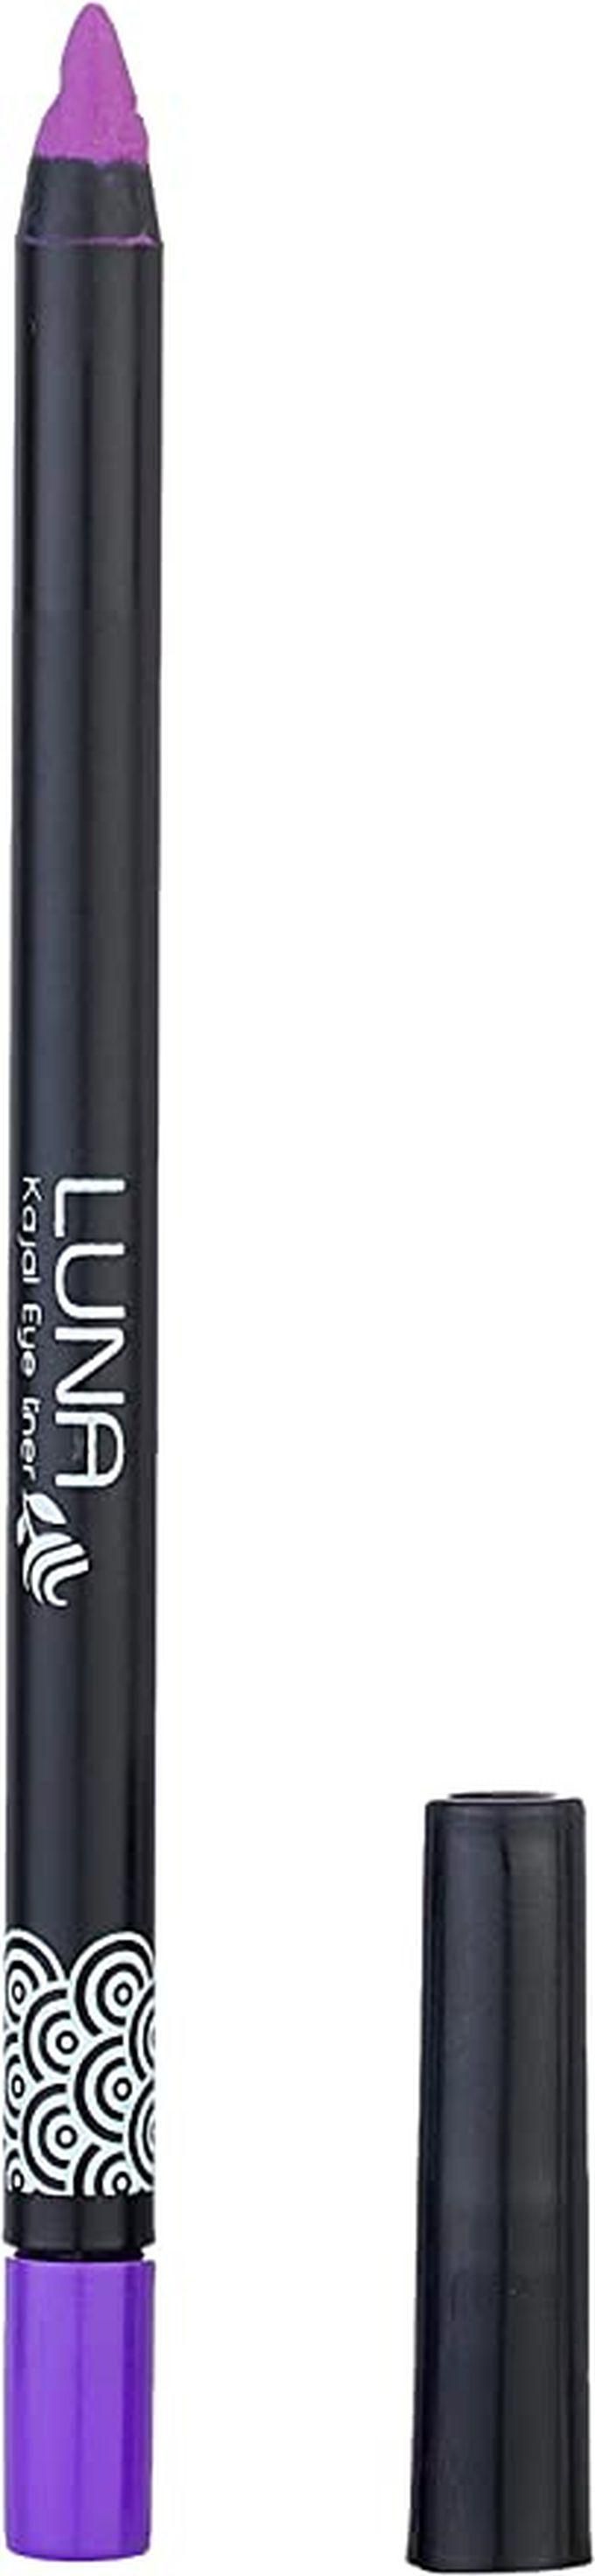 Luna Eye Liner Pencil - Kajal Soft - Stay All Day - No: 6